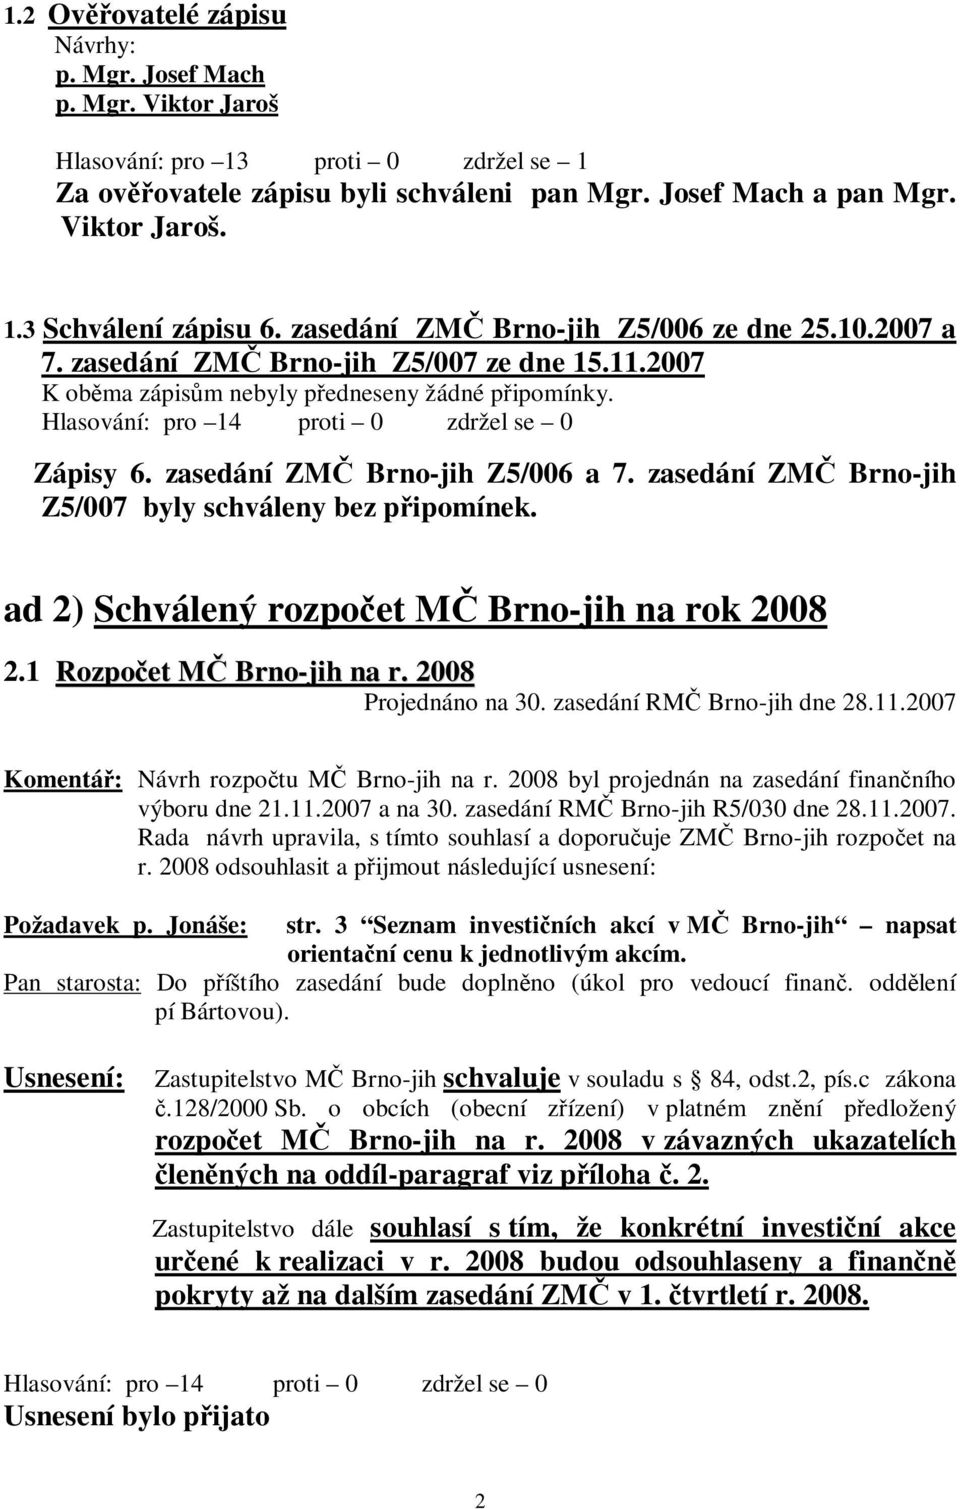 zasedání ZMČ Brno-jih Z5/006 a 7. zasedání ZMČ Brno-jih Z5/007 byly schváleny bez připomínek. ad 2) Schválený rozpočet MČ Brno-jih na rok 2008 2.1 Rozpočet MČ Brno-jih na r.